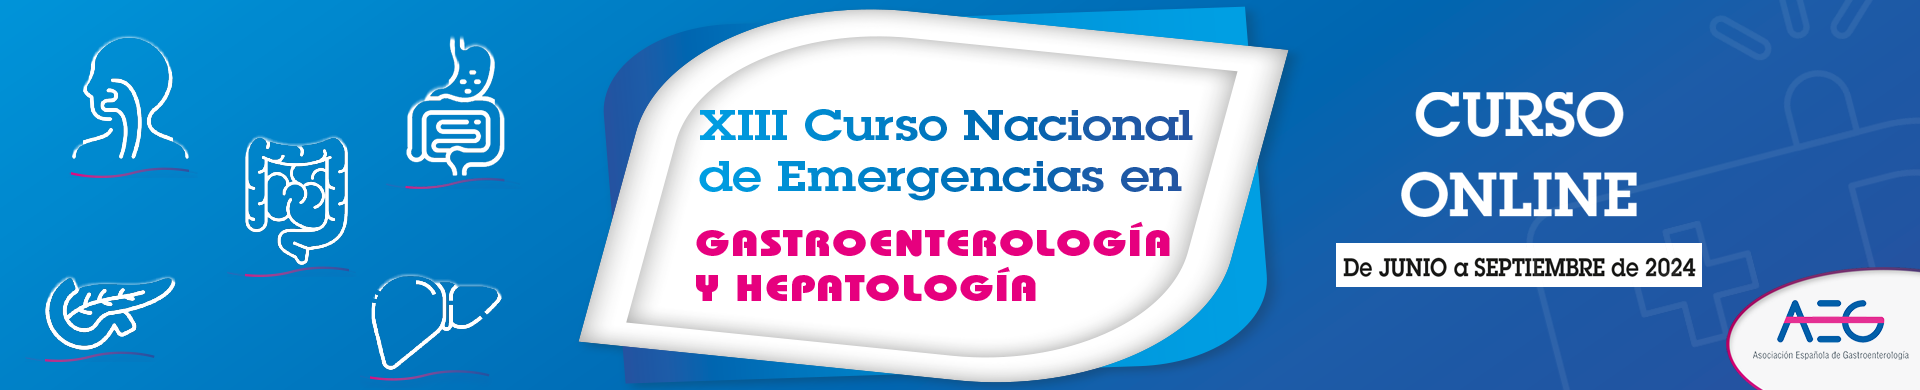 XIII Curso Nacional de Emergencias en Gastroenterología y Hepatología